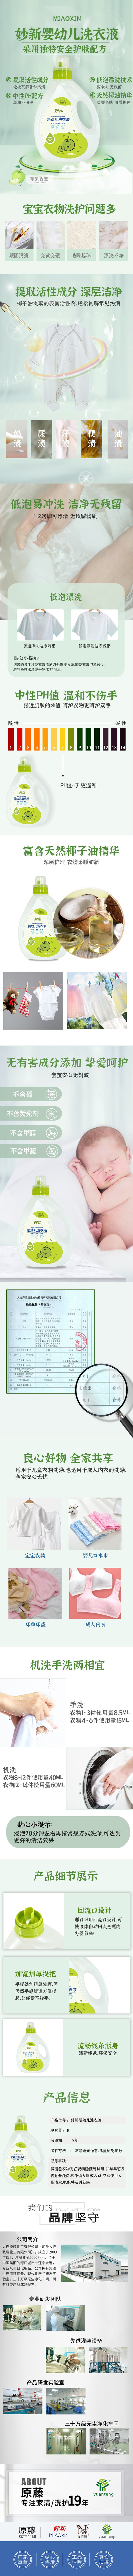 格式工厂婴幼儿苹果洗衣液详情页第五版1L.jpg